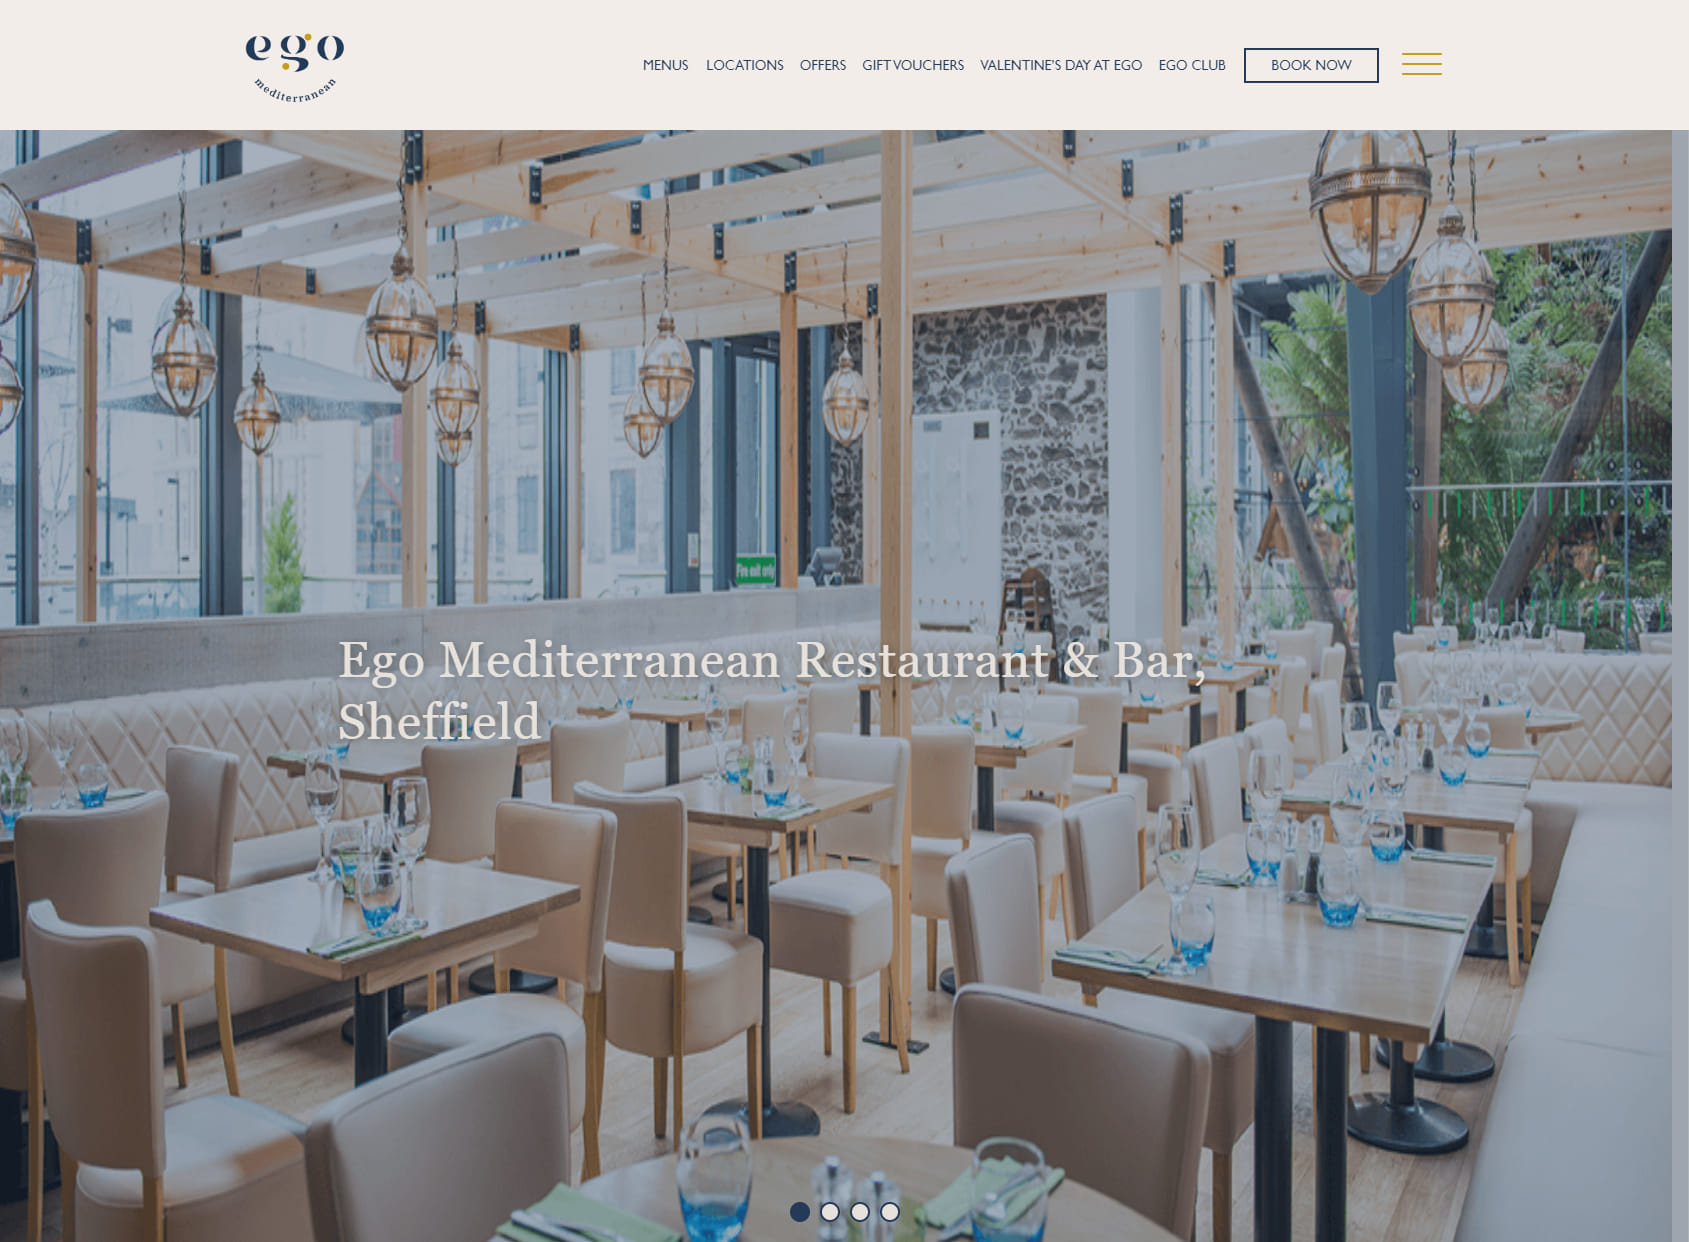 Ego Mediterranean Restaurant & Bar, Sheffield